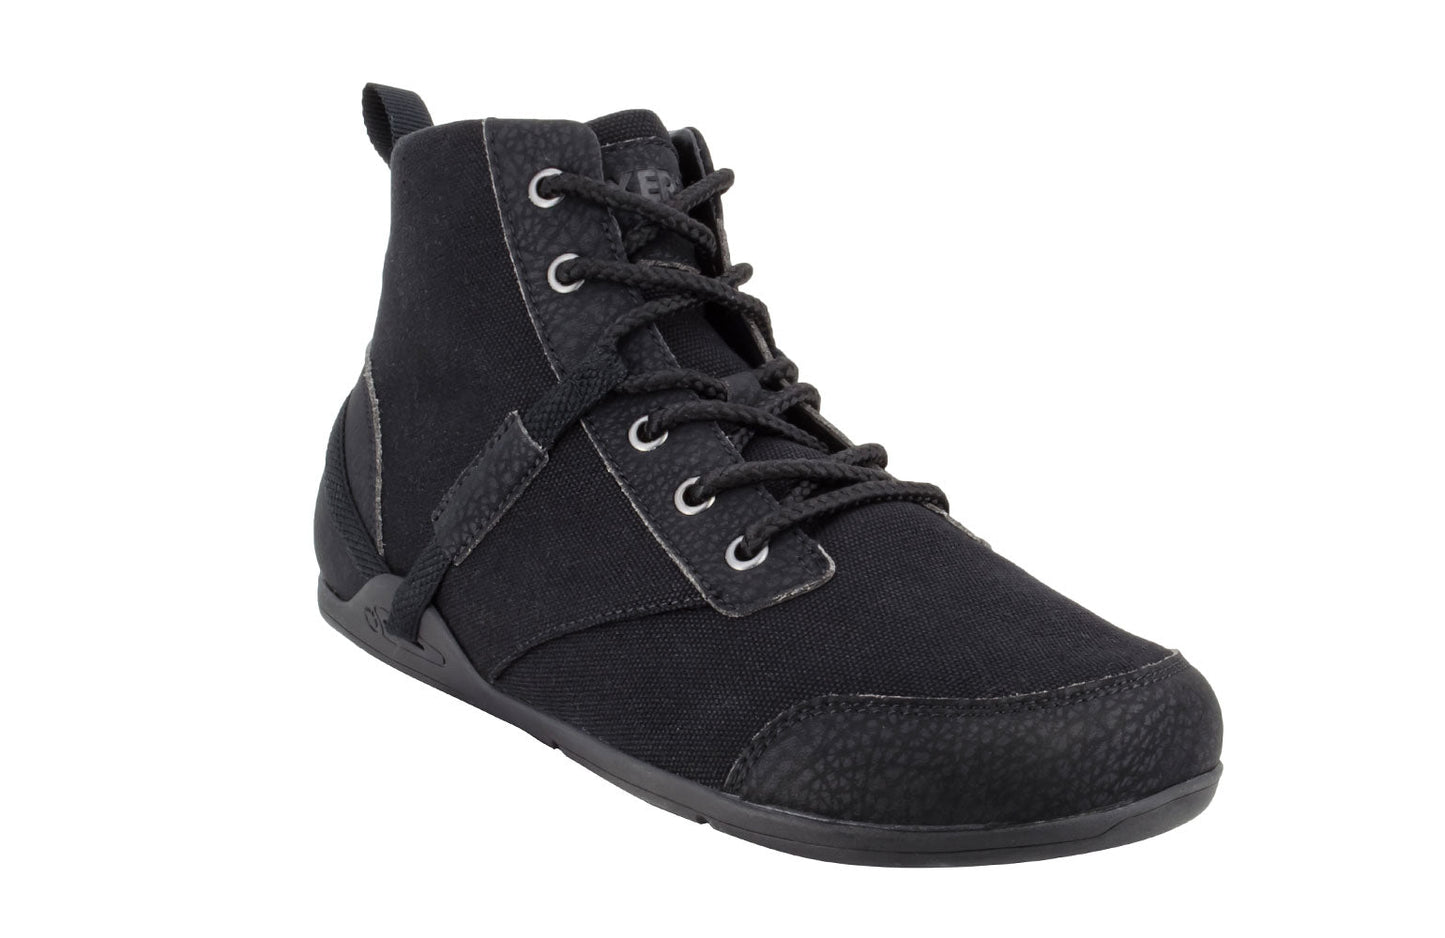 Xero Shoes Denver herre støvle i sort, minimalistisk design til barfodet komfort, med vandafvisende canvas og flad sål til naturlig fodbevægelse